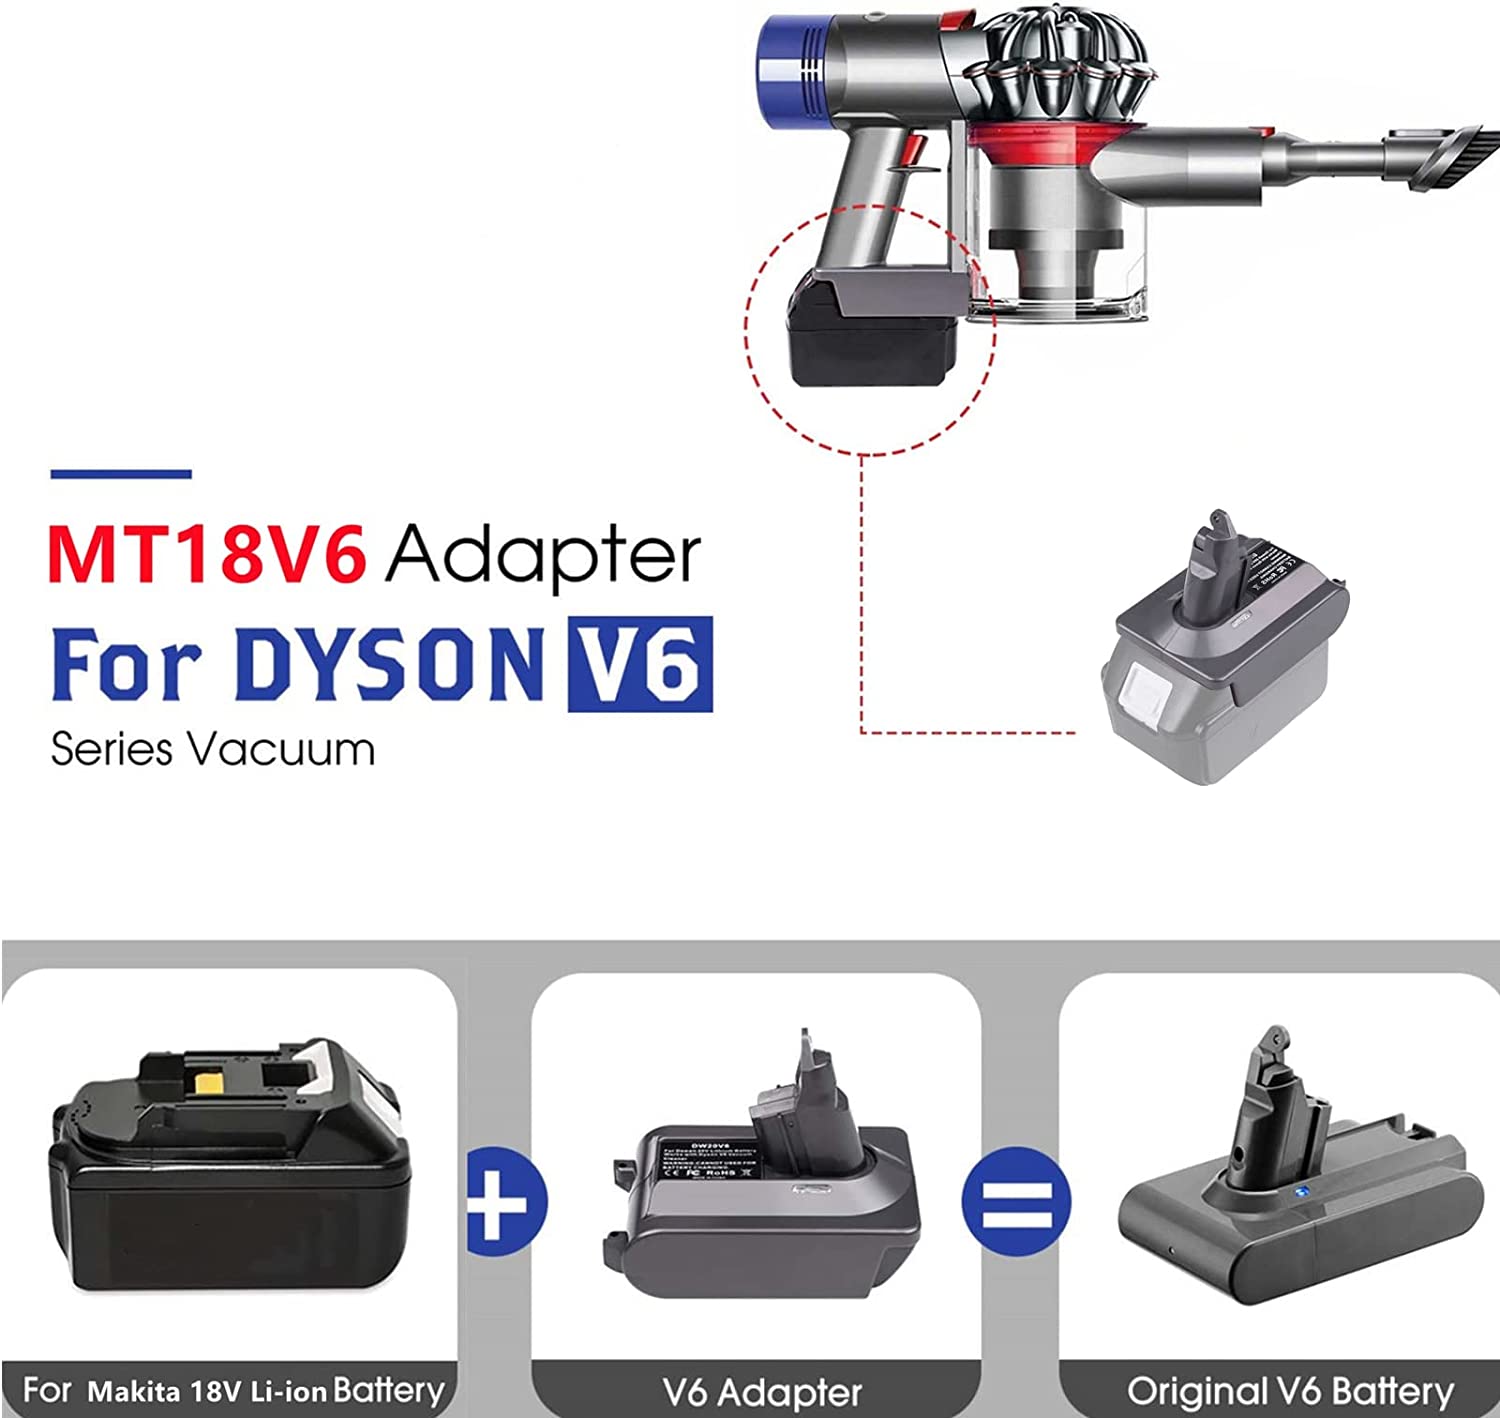 ମାକିତା 18V ଲିଥିୟମ୍ ବ୍ୟାଟେରୀ ପାଇଁ ଡିସନ୍ V6 ବ୍ୟାଟେରୀ ଆଡାପ୍ଟର Dyson V6 ବ୍ୟାଟେରୀରେ ରୂପାନ୍ତରିତ |